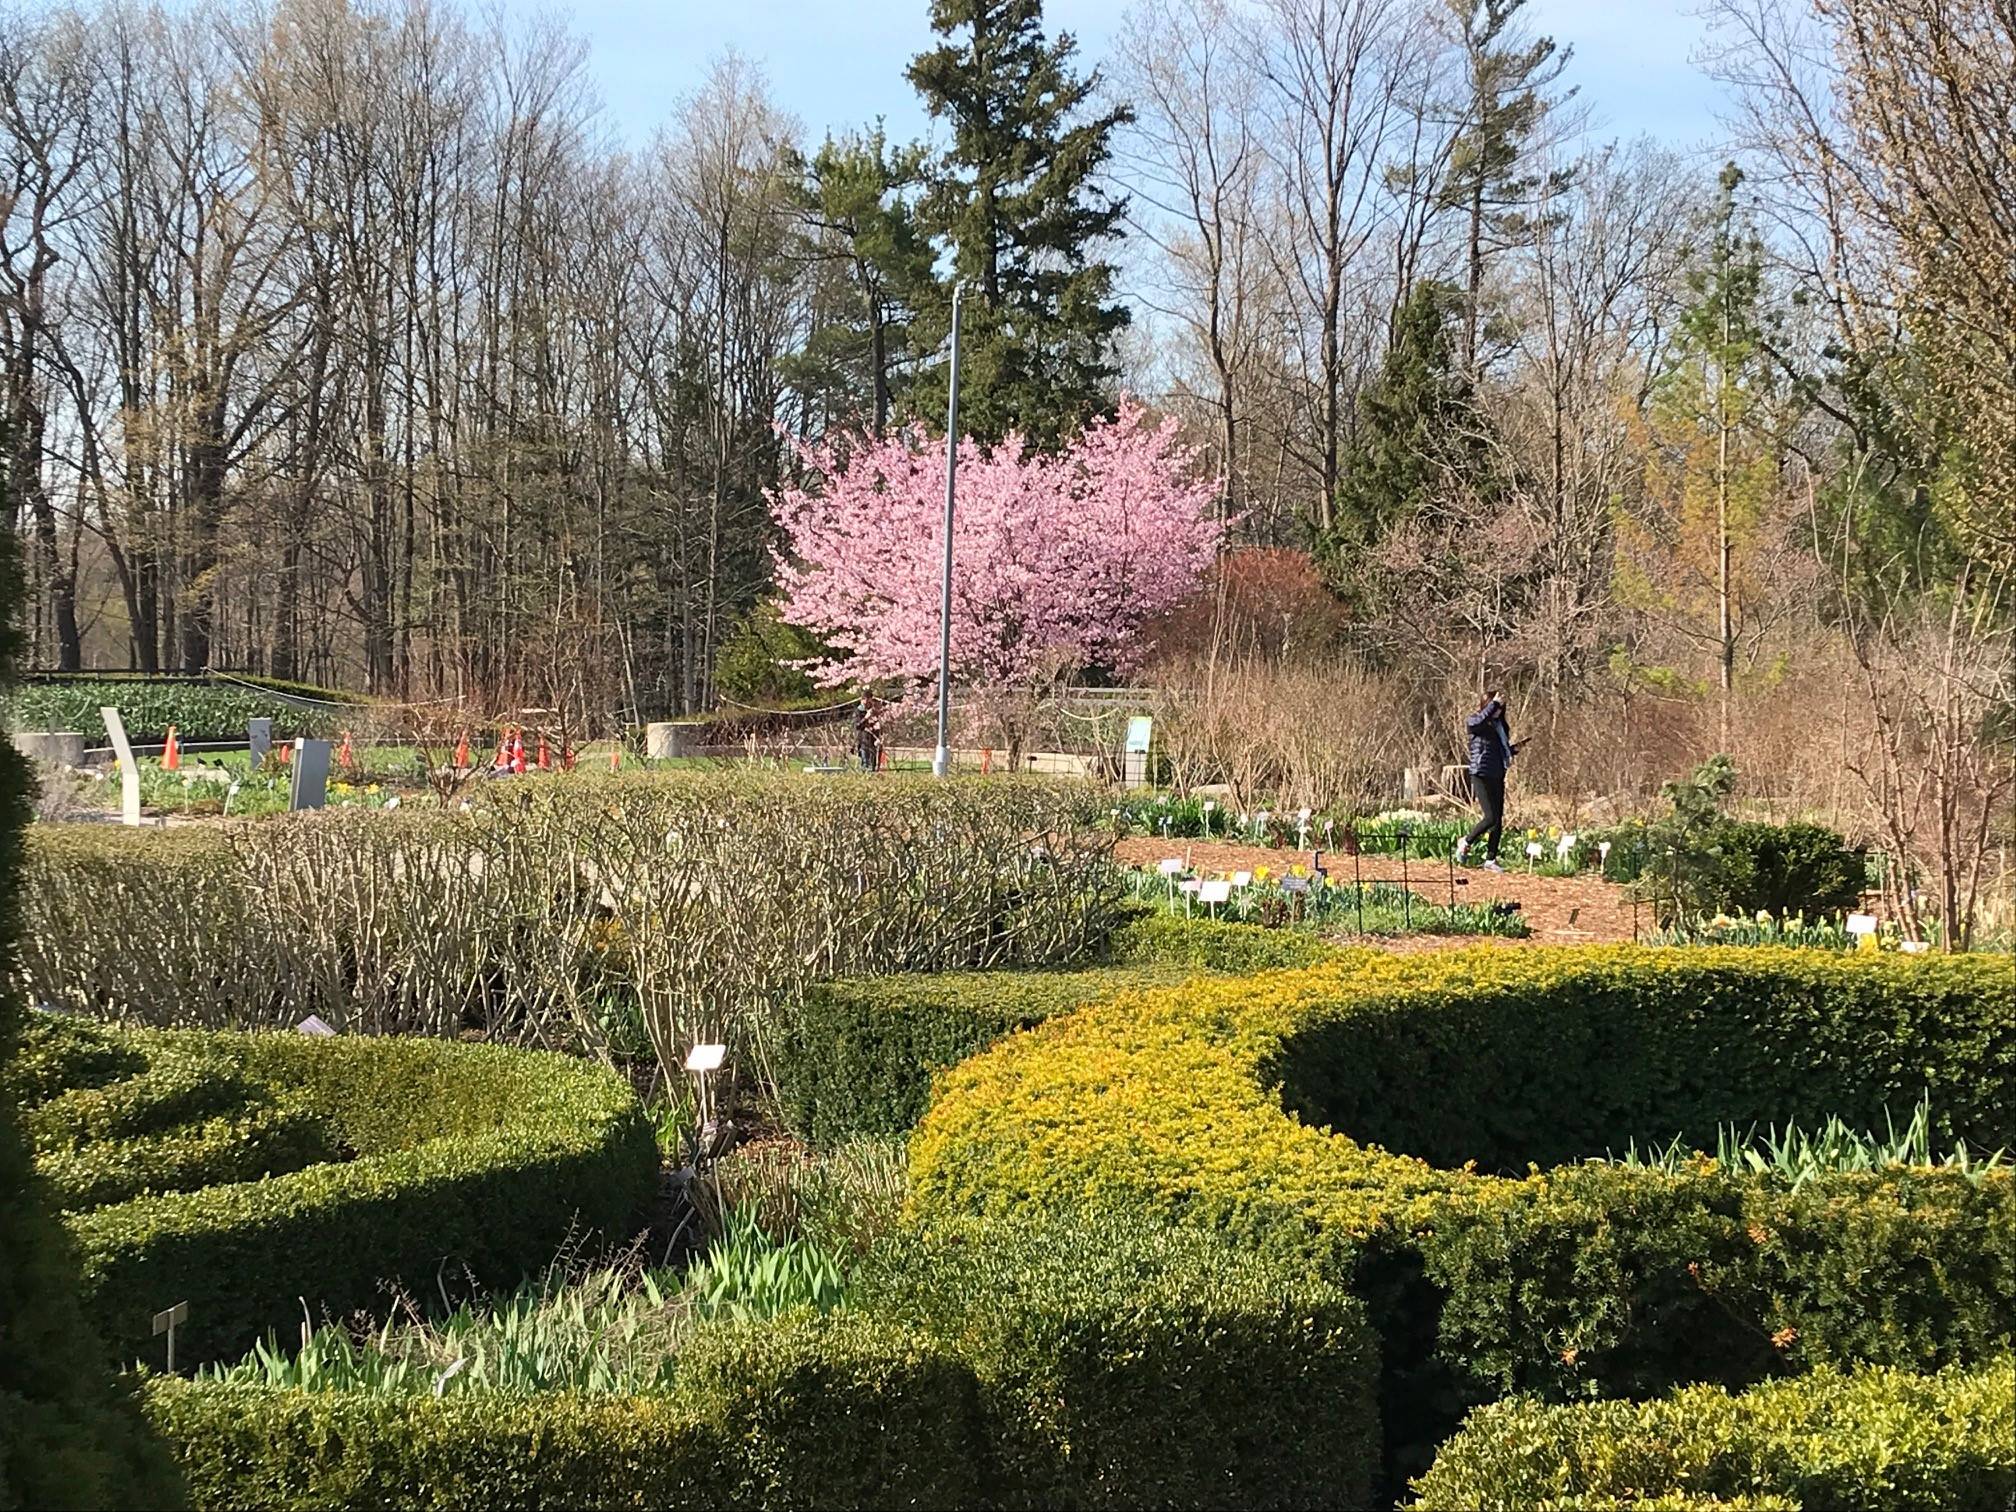 The Toronto Botanical Garden